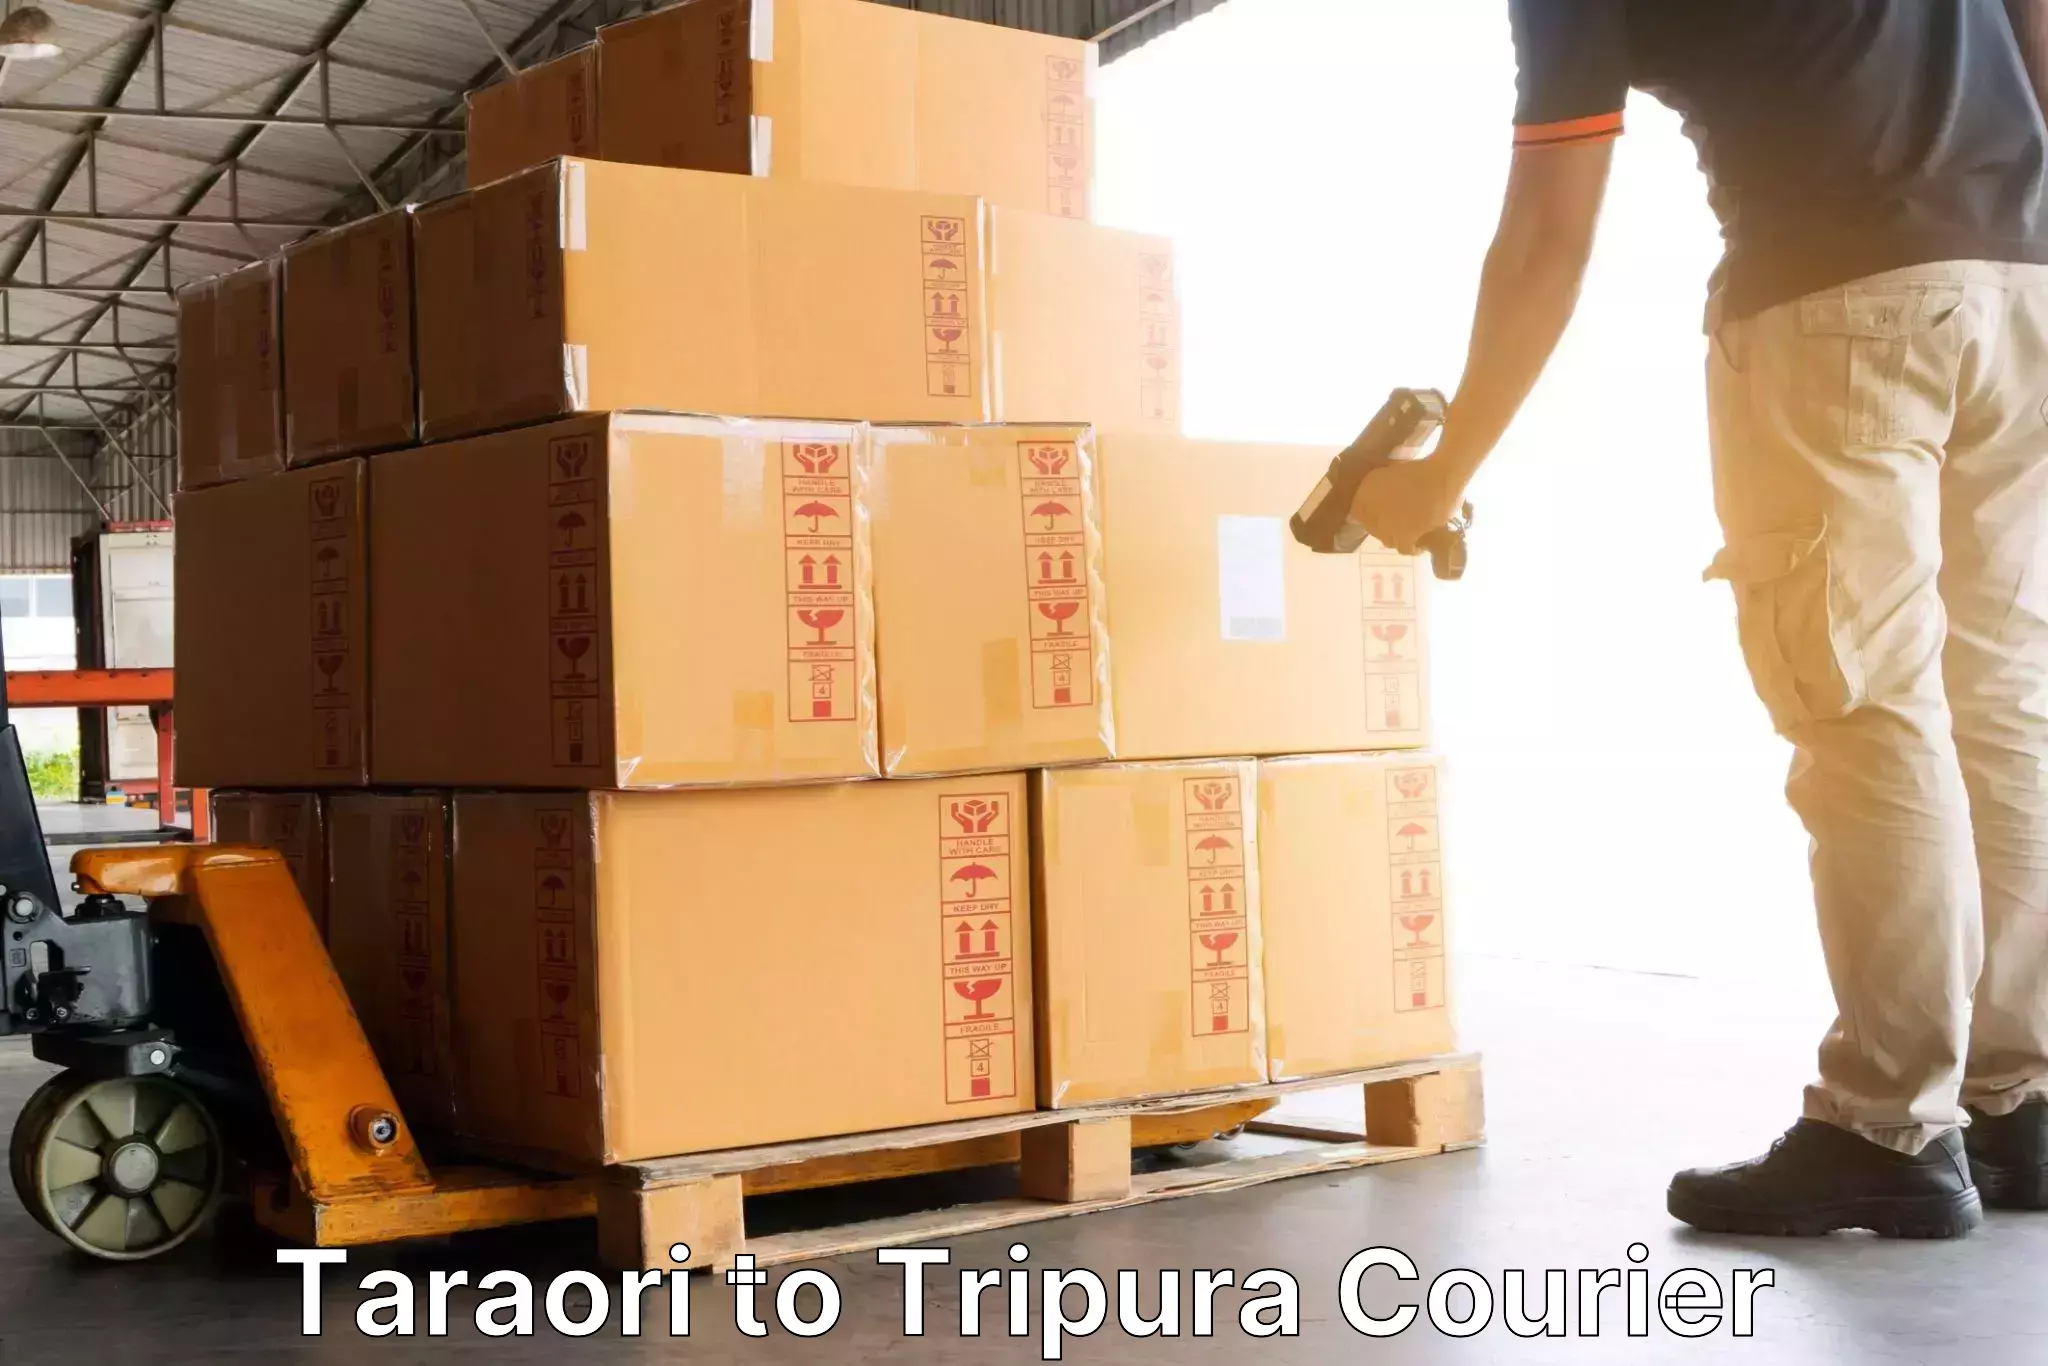 Flexible courier rates Taraori to Udaipur Tripura